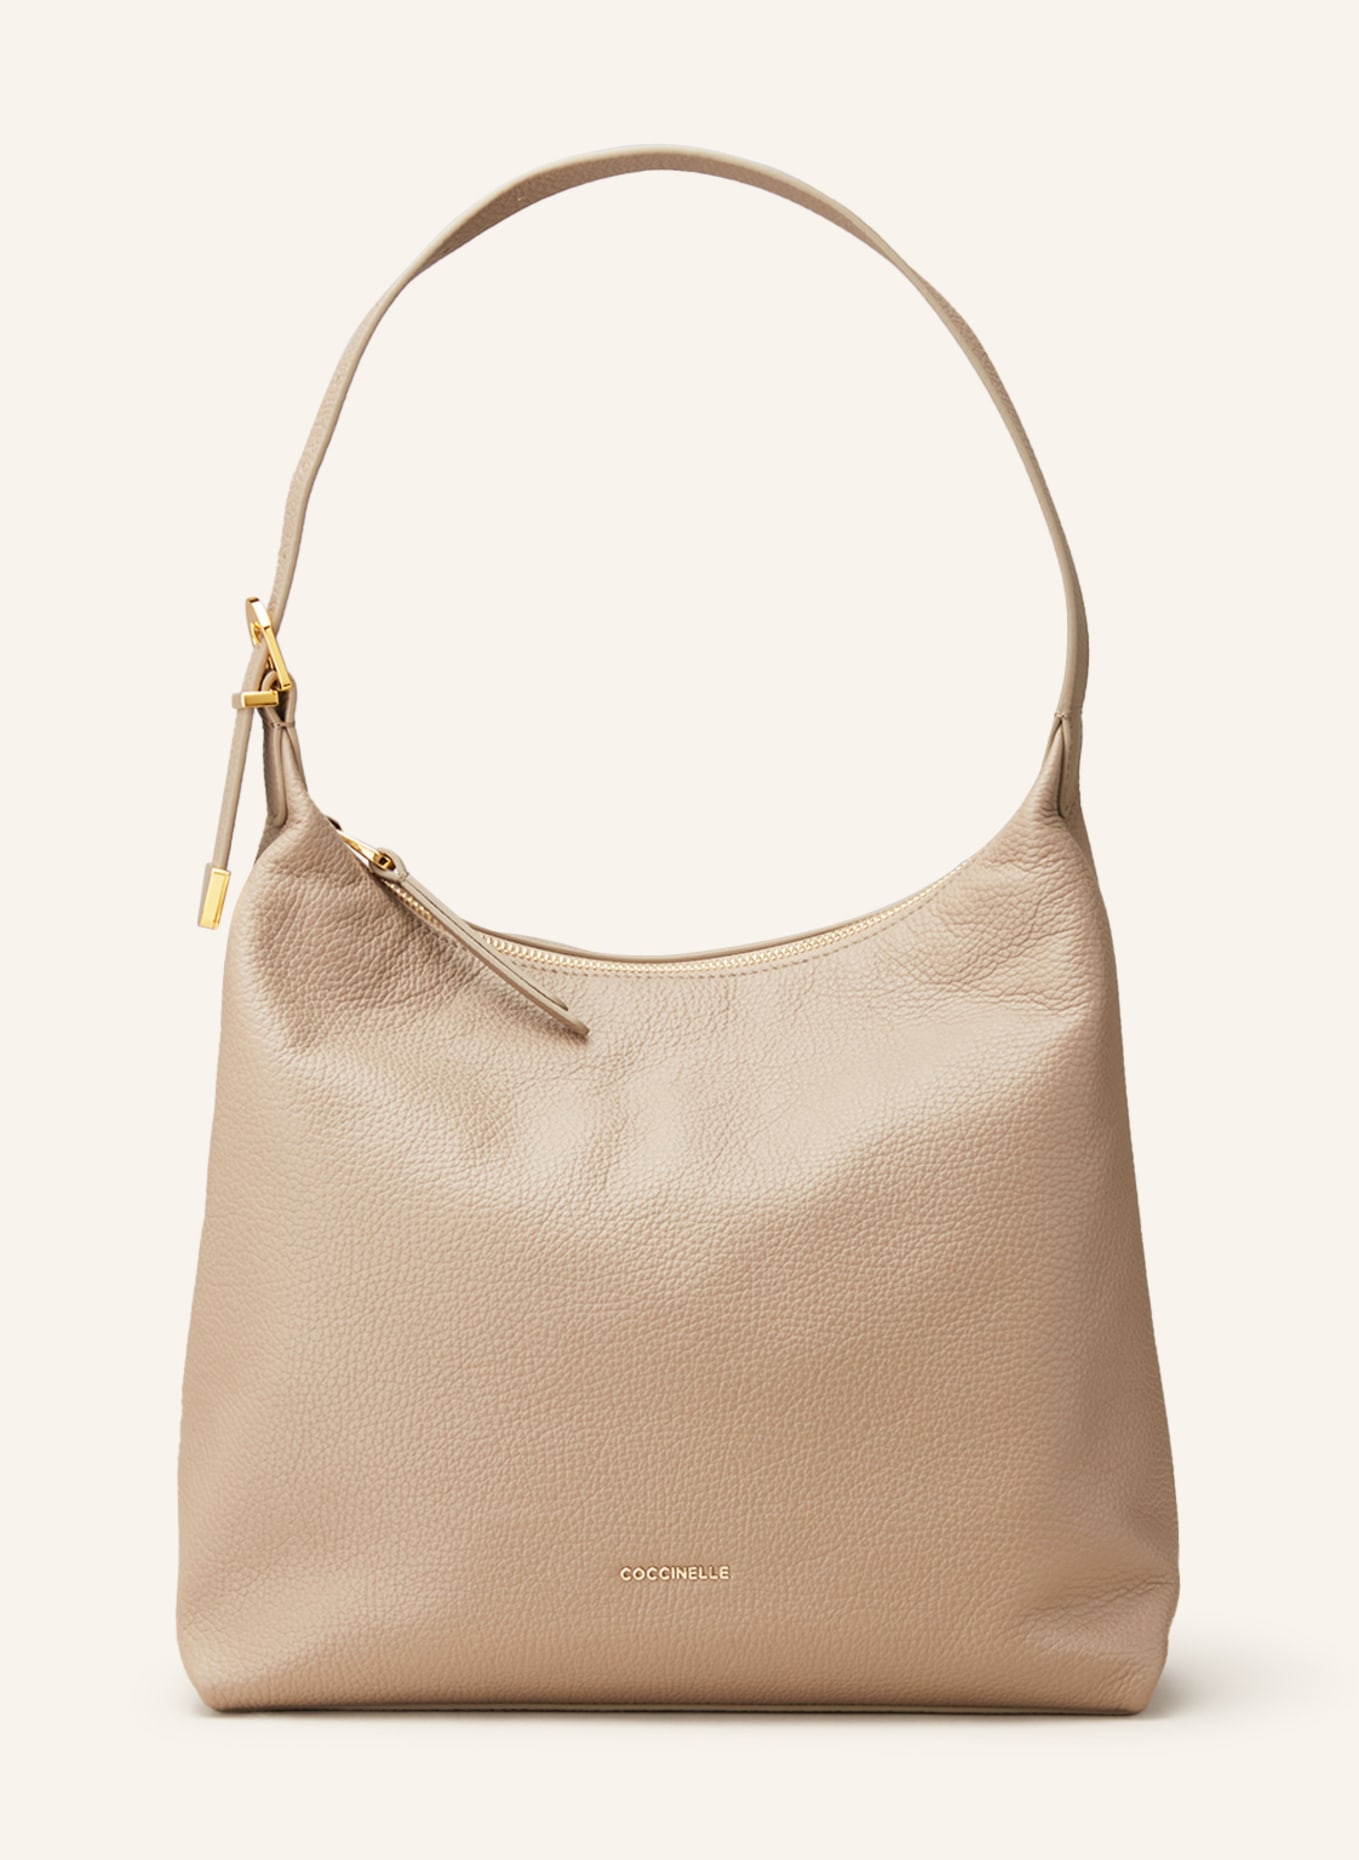 COCCINELLE Handtasche, Farbe: TAUPE (Bild 1)